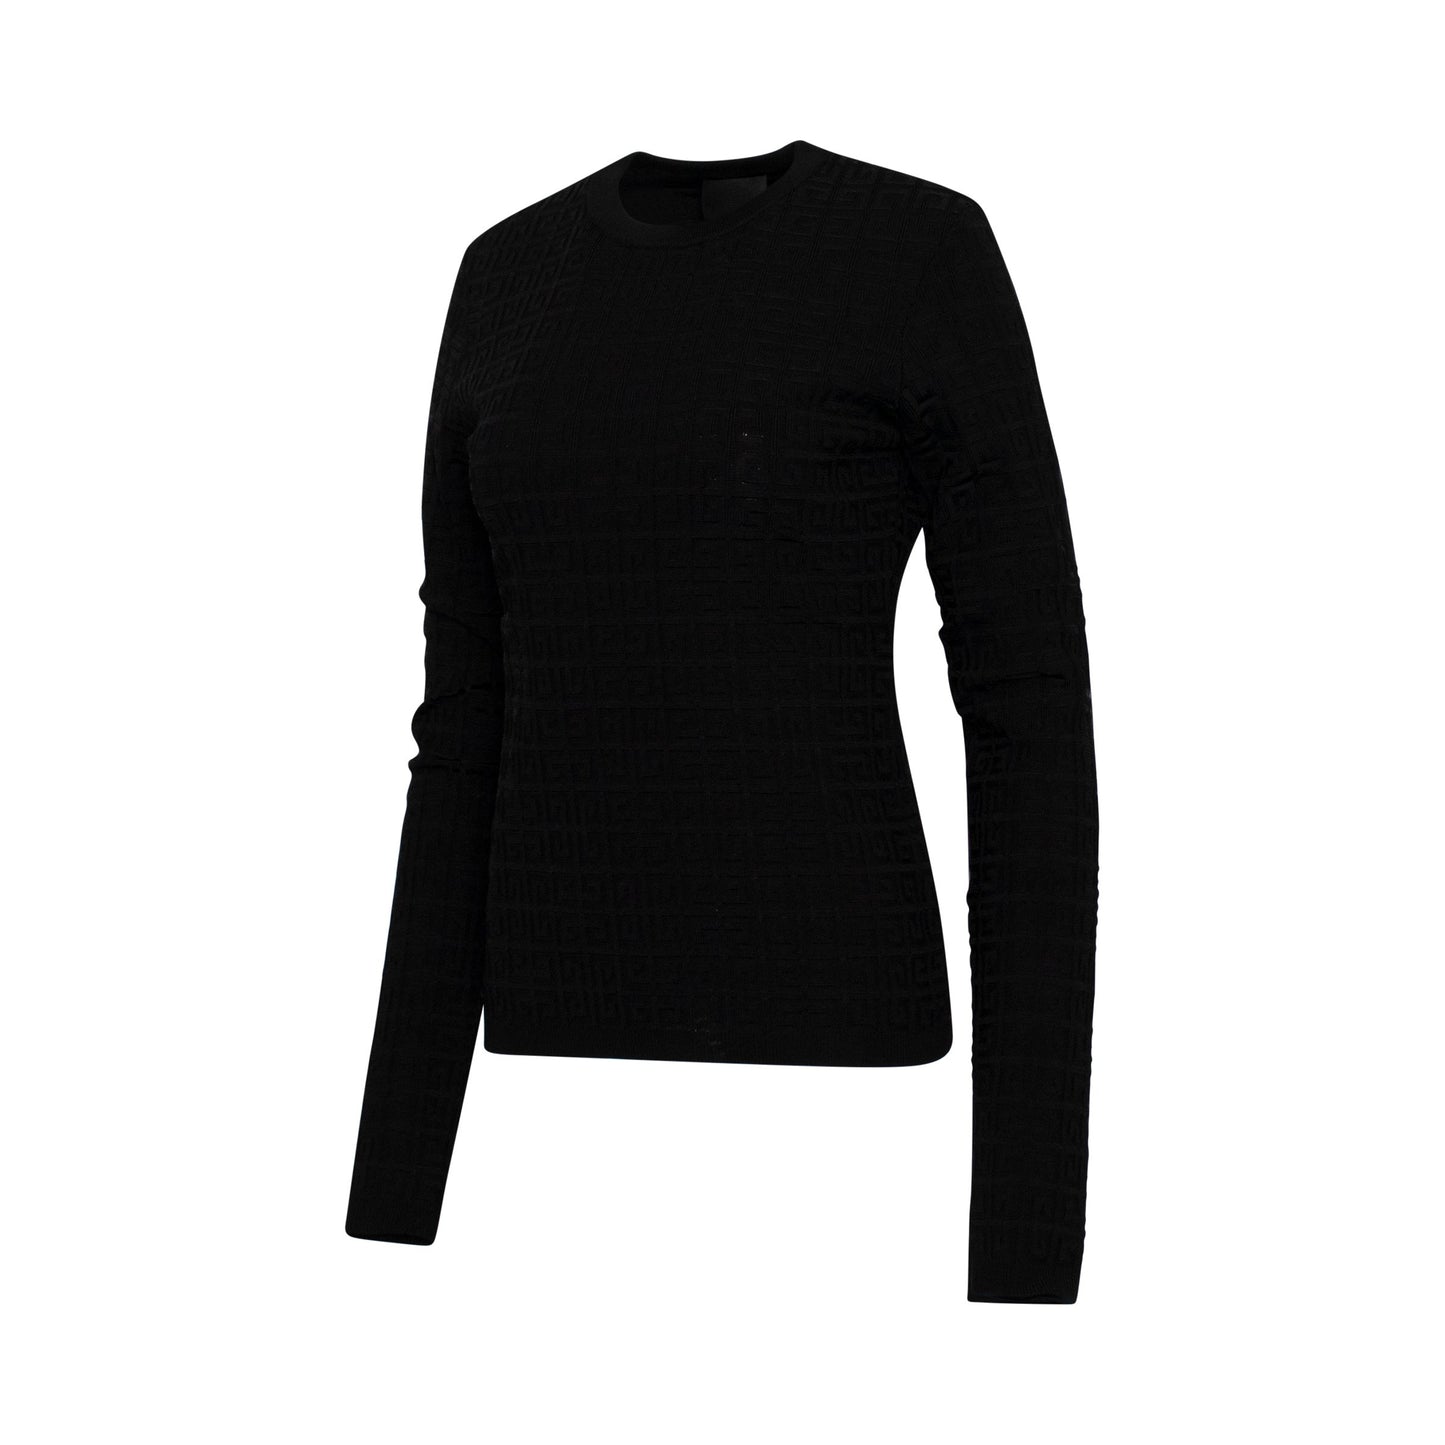 4G Viscose Stretch Knit Sweater in Black